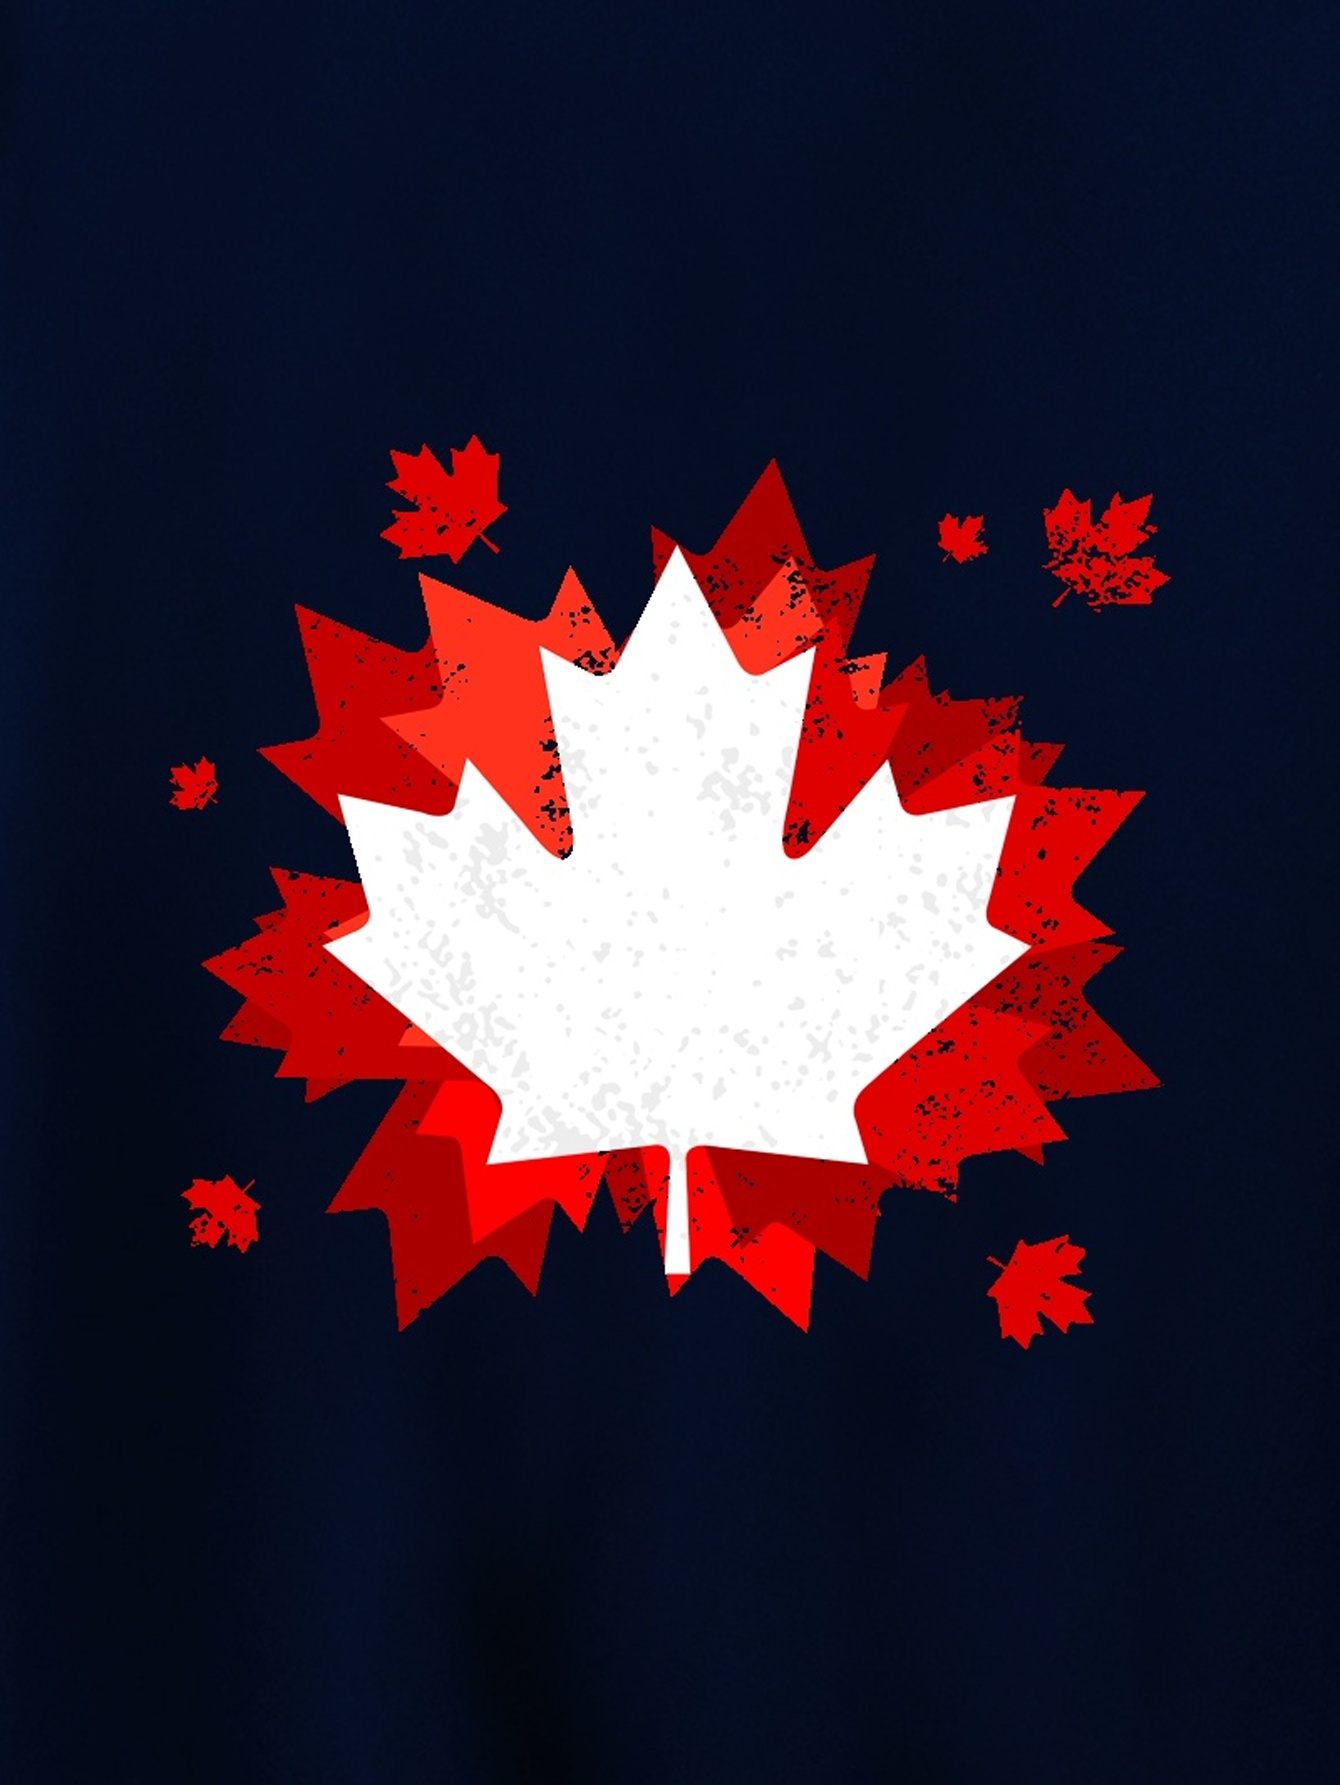 Men's Suit, Men's Maple Leaf Graphic Short Sleeves T-shirt